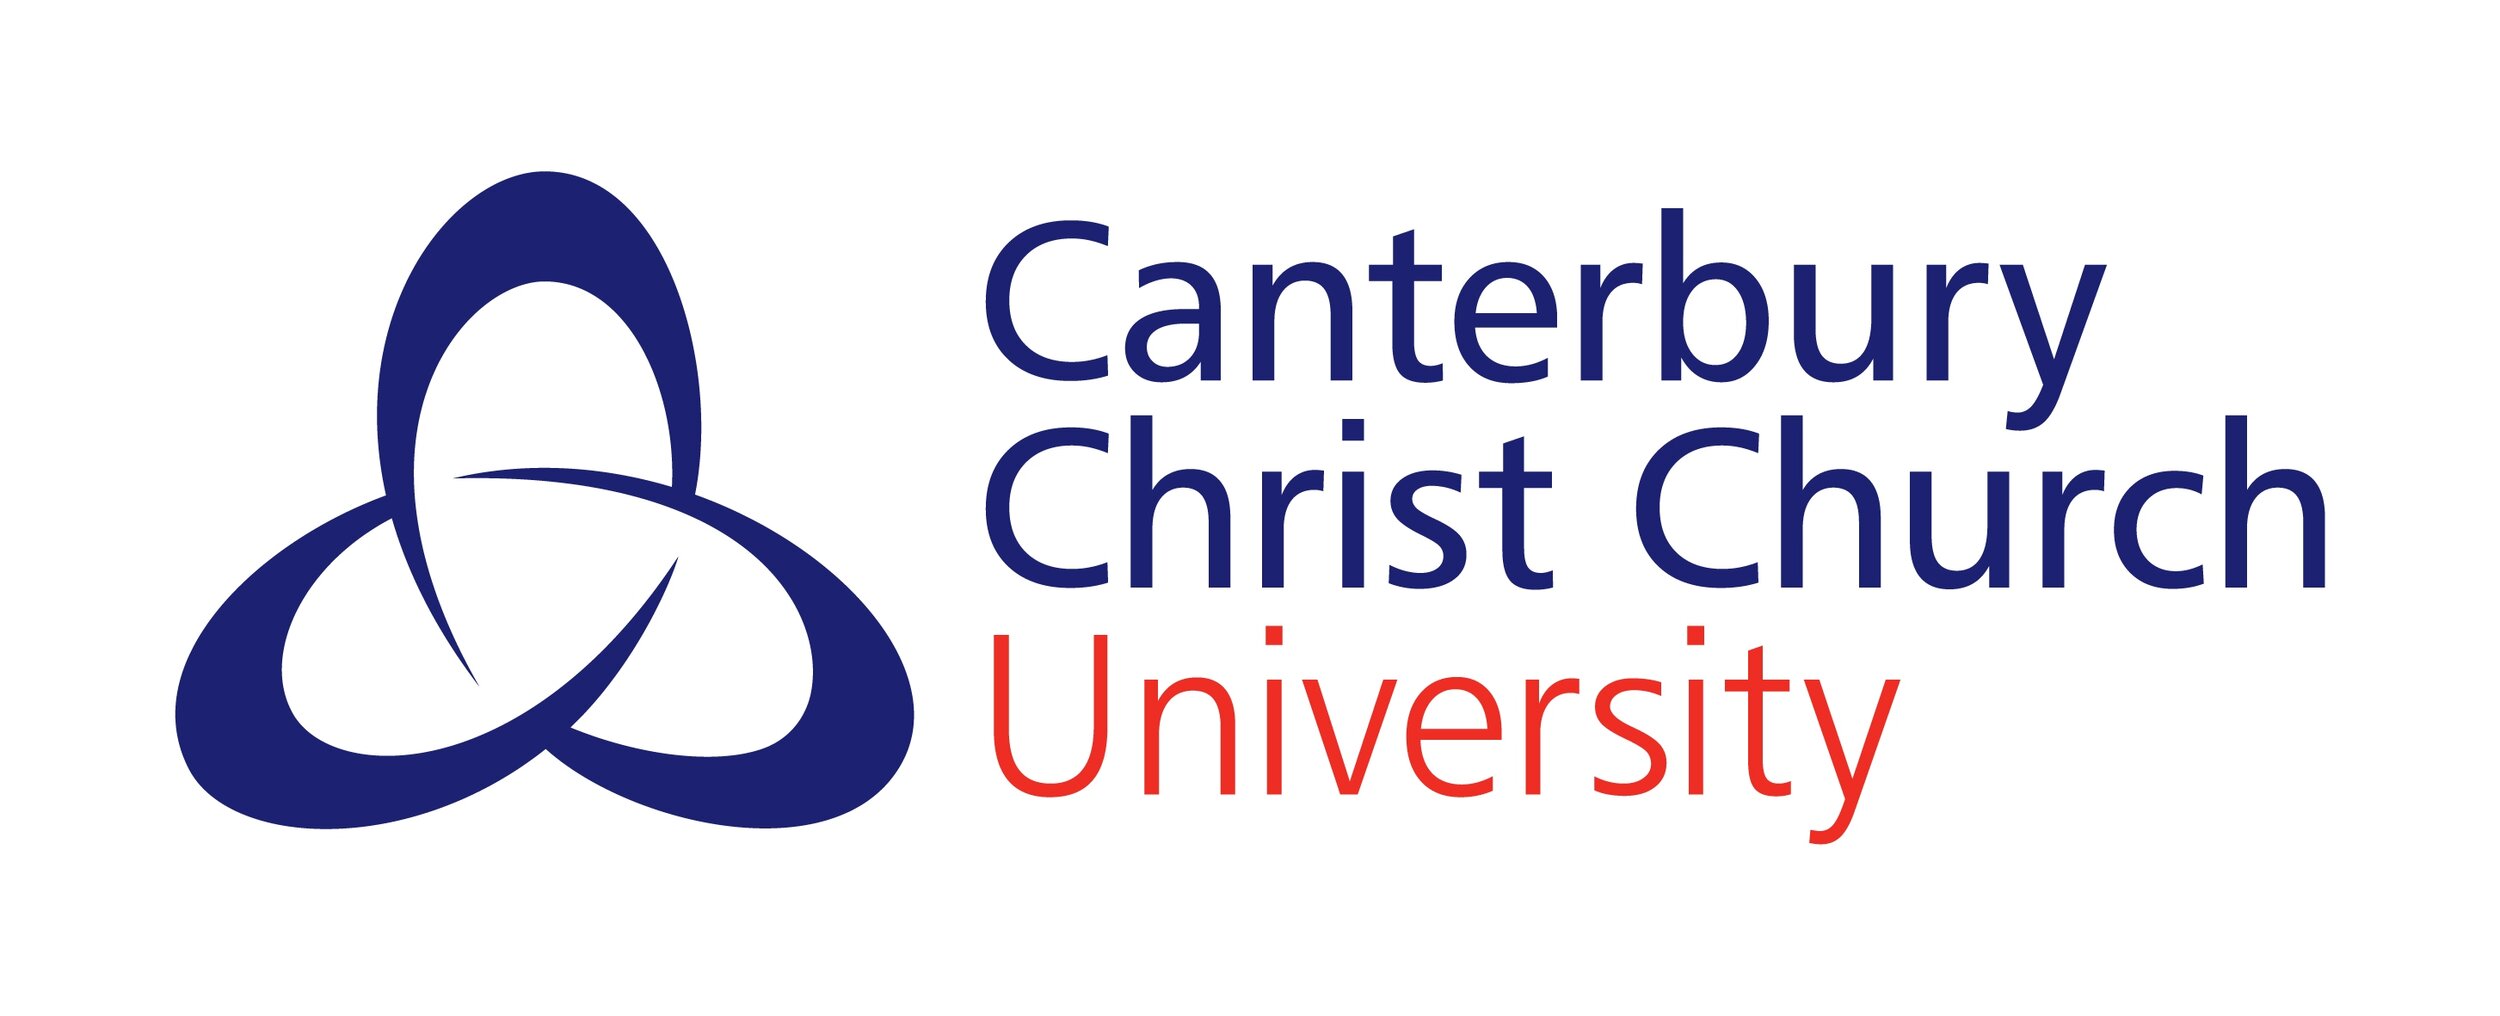 CCCU-logo-2colour1-2.jpg